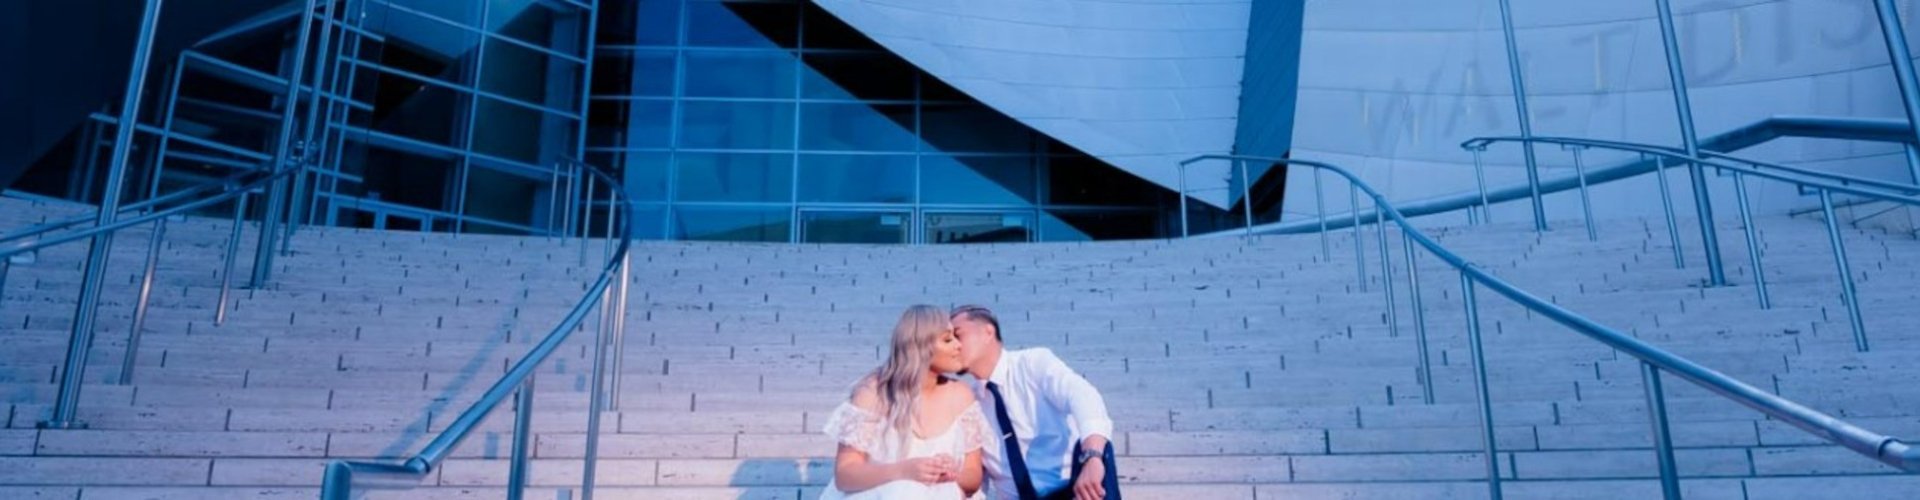 Урбан шик свадьба на городской лестнице